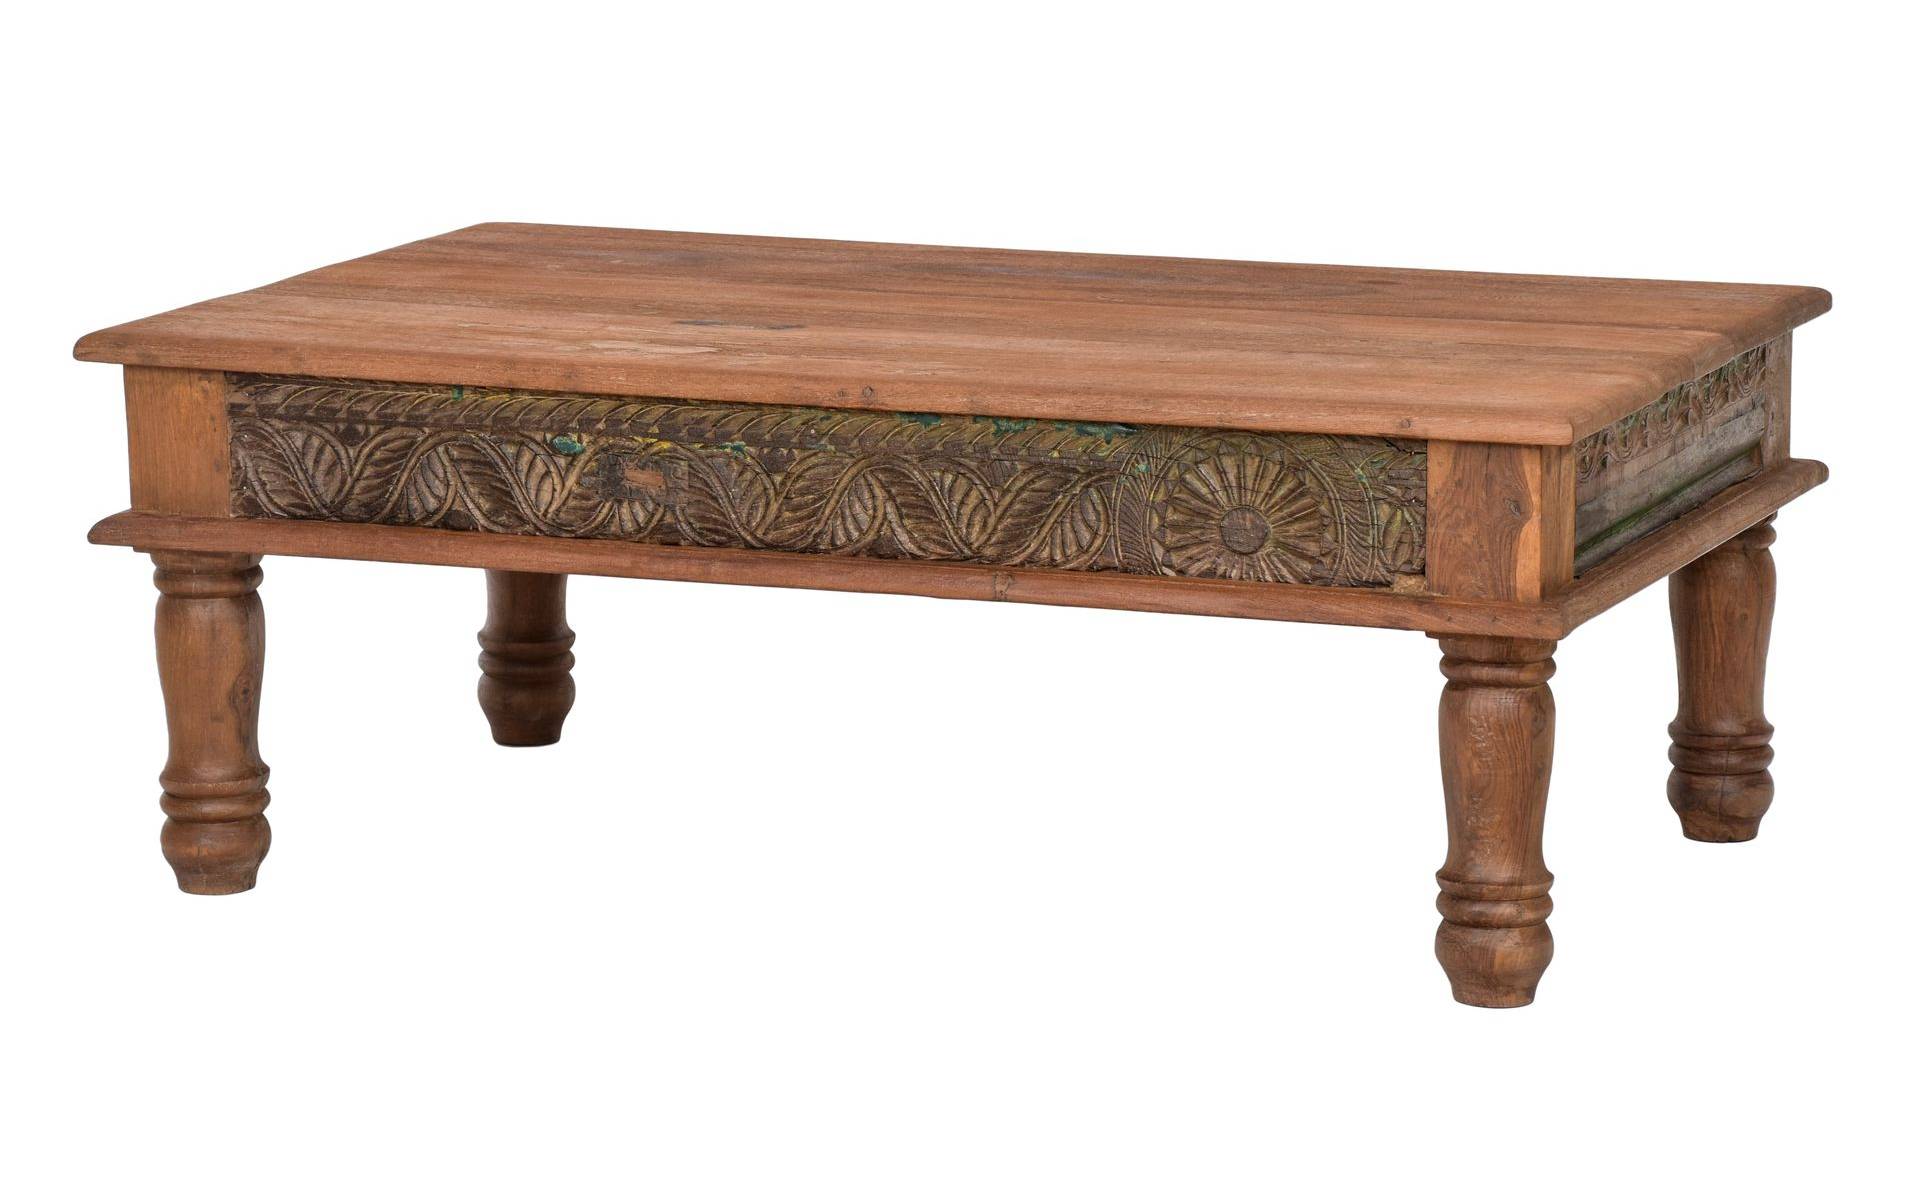 Konferenčný stolík z teakového dreva, ručné rezby, 122x75x45cm